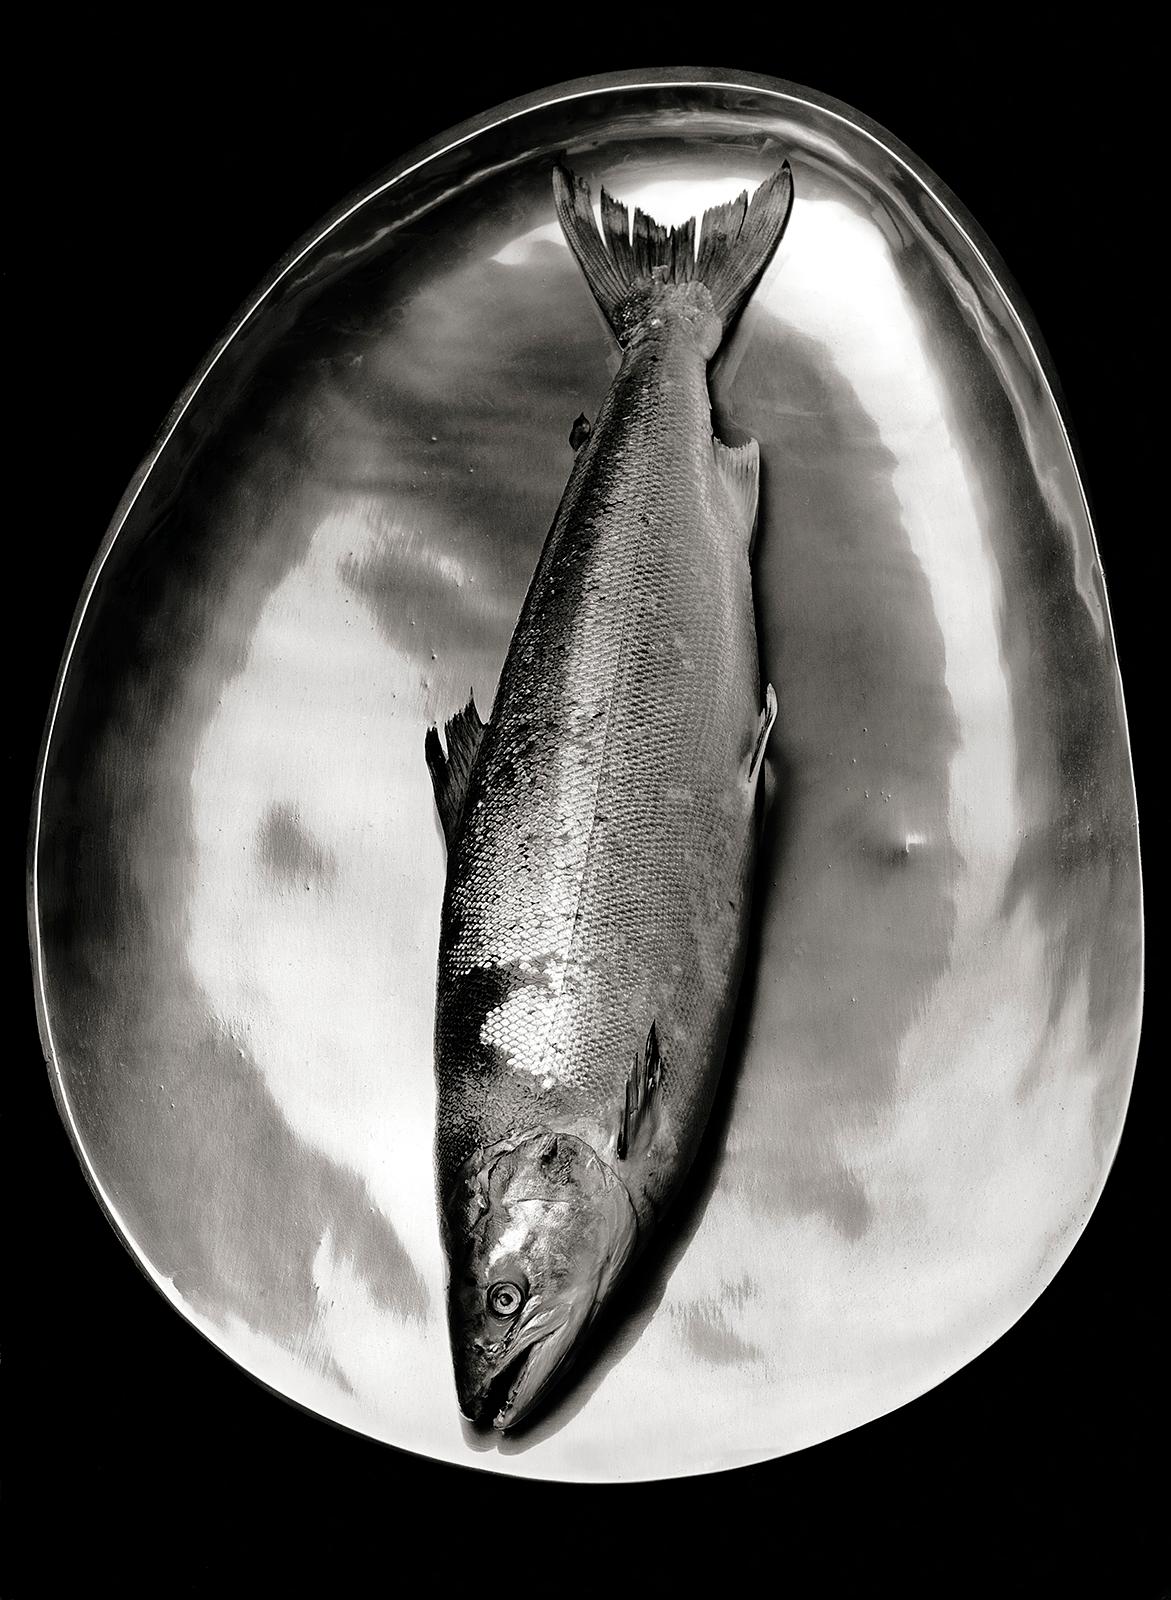 Black and White Photograph Ian Sanderson - Saumon - Édition limitée signée d'une nature morte en mer, photo en noir et blanc, Nature